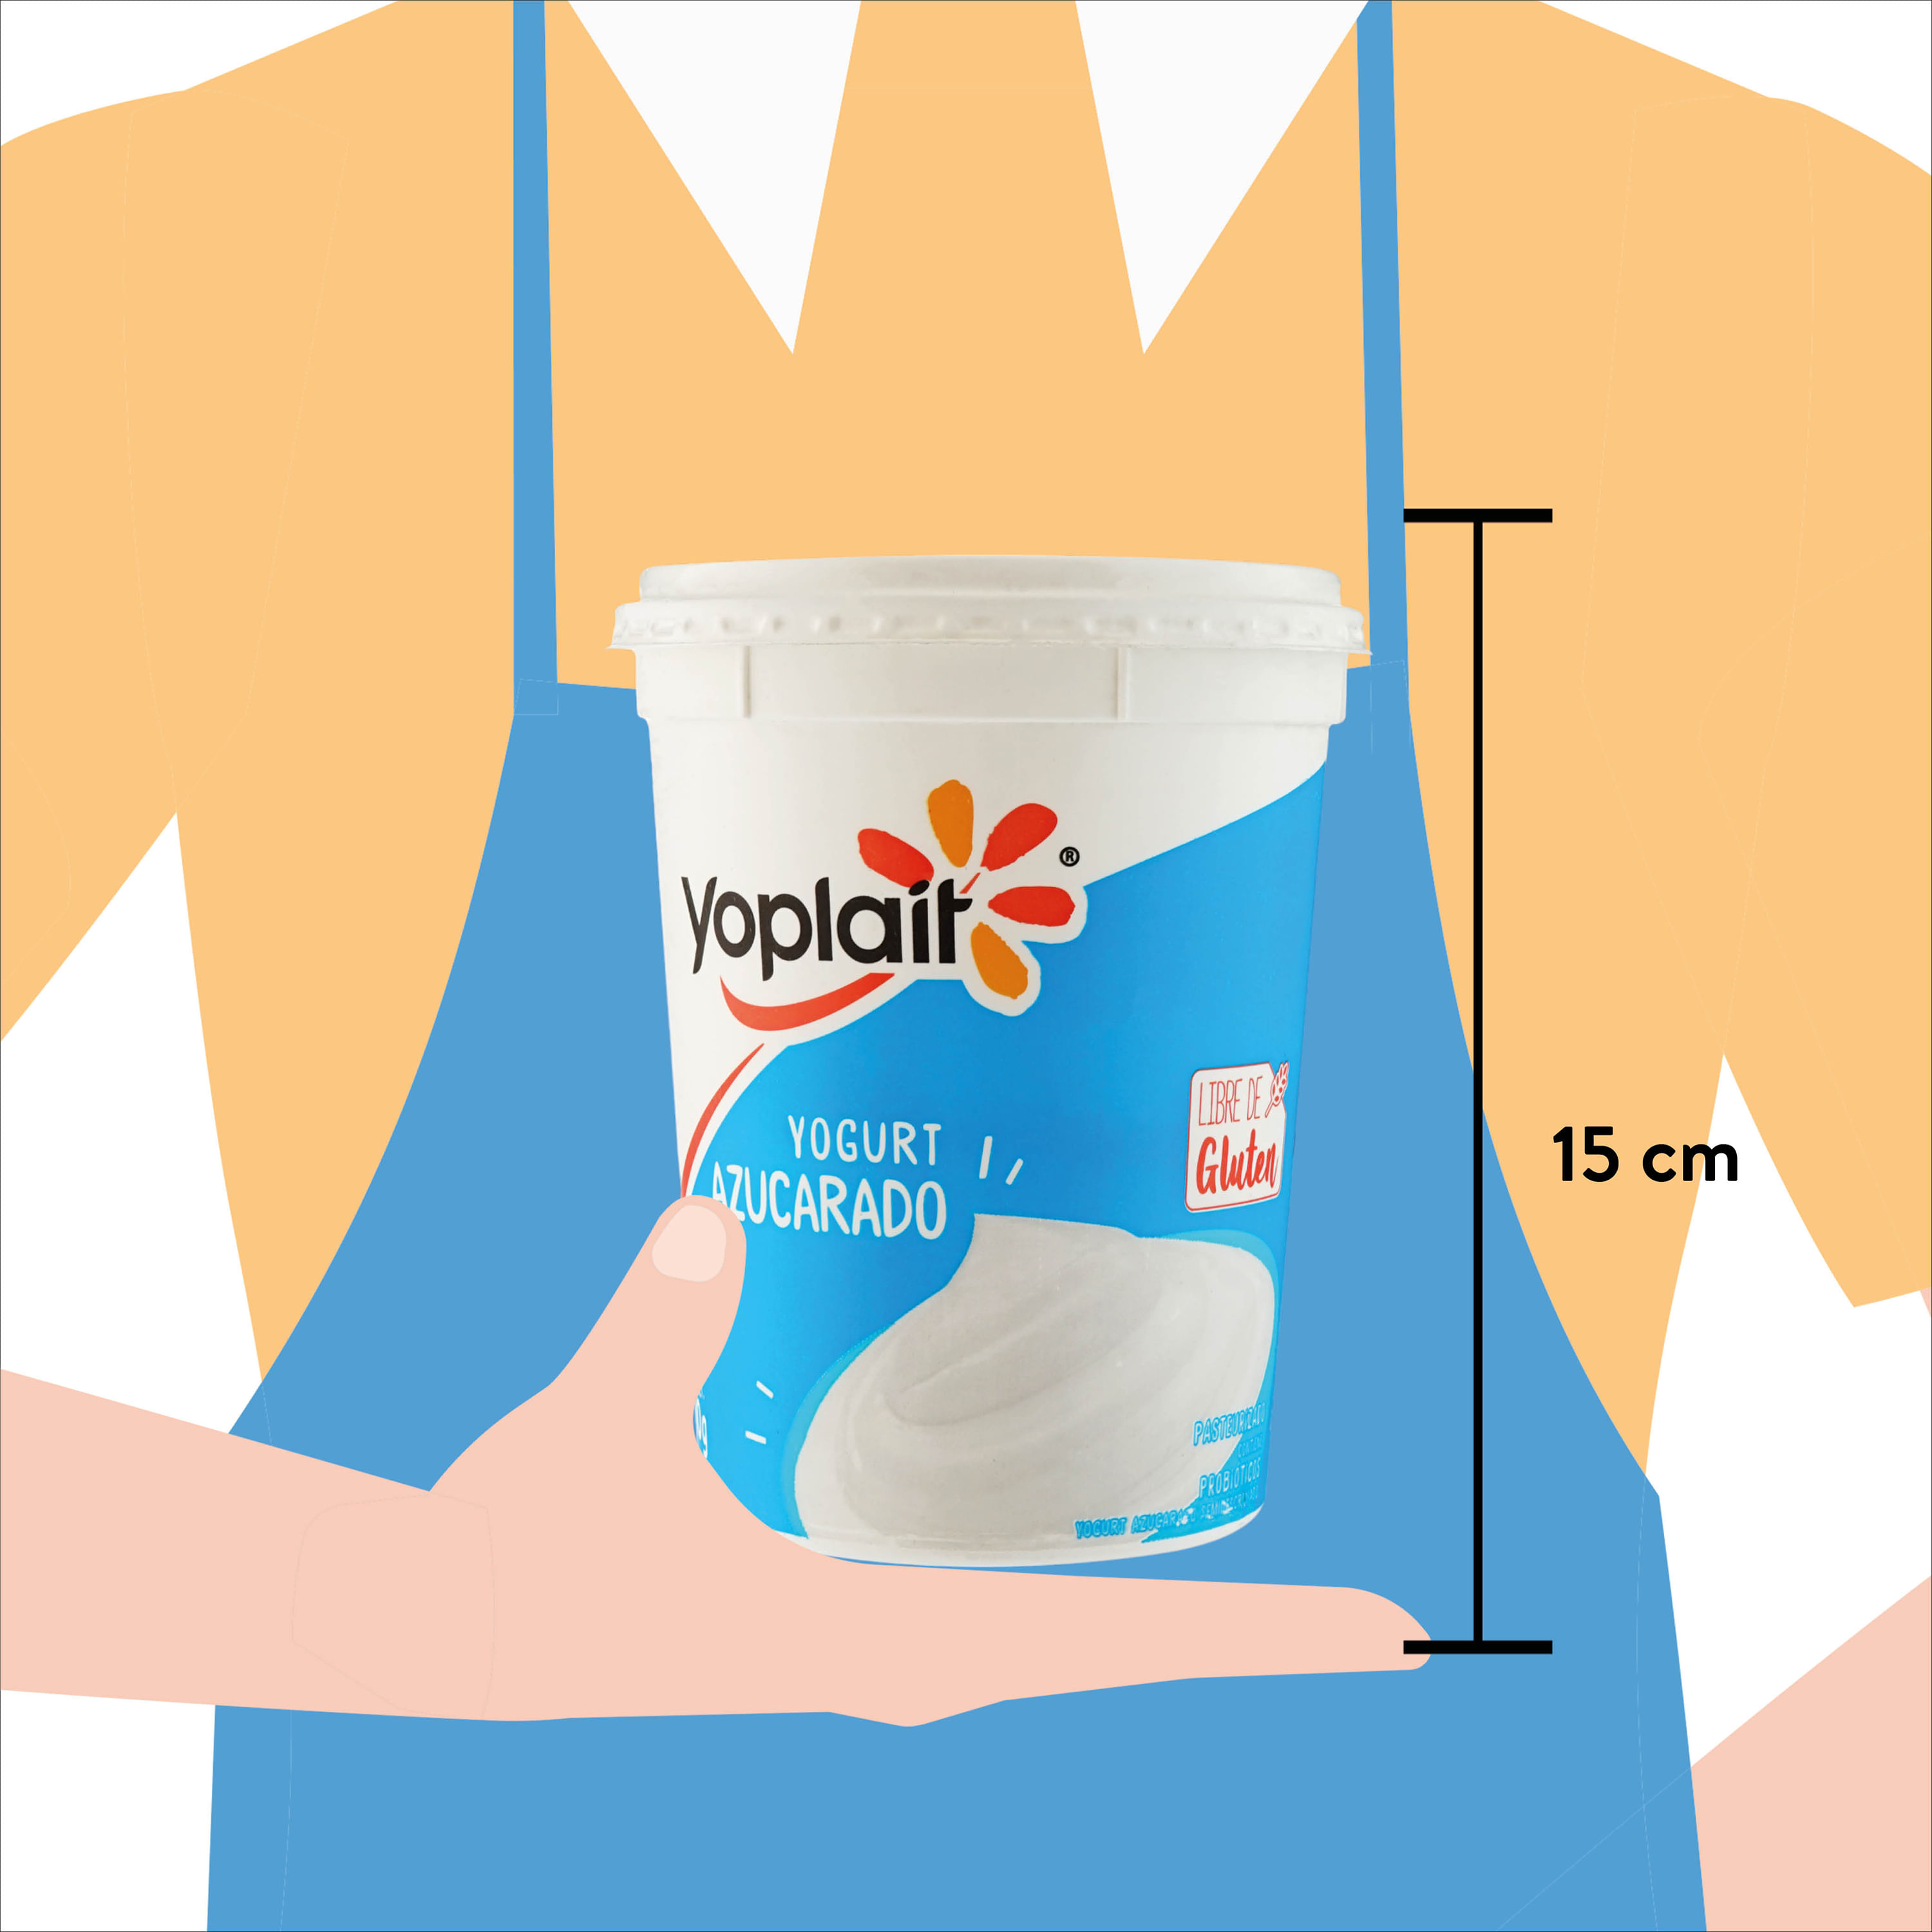 Comprar Yogurt Yoplait Natural - 1000Gr